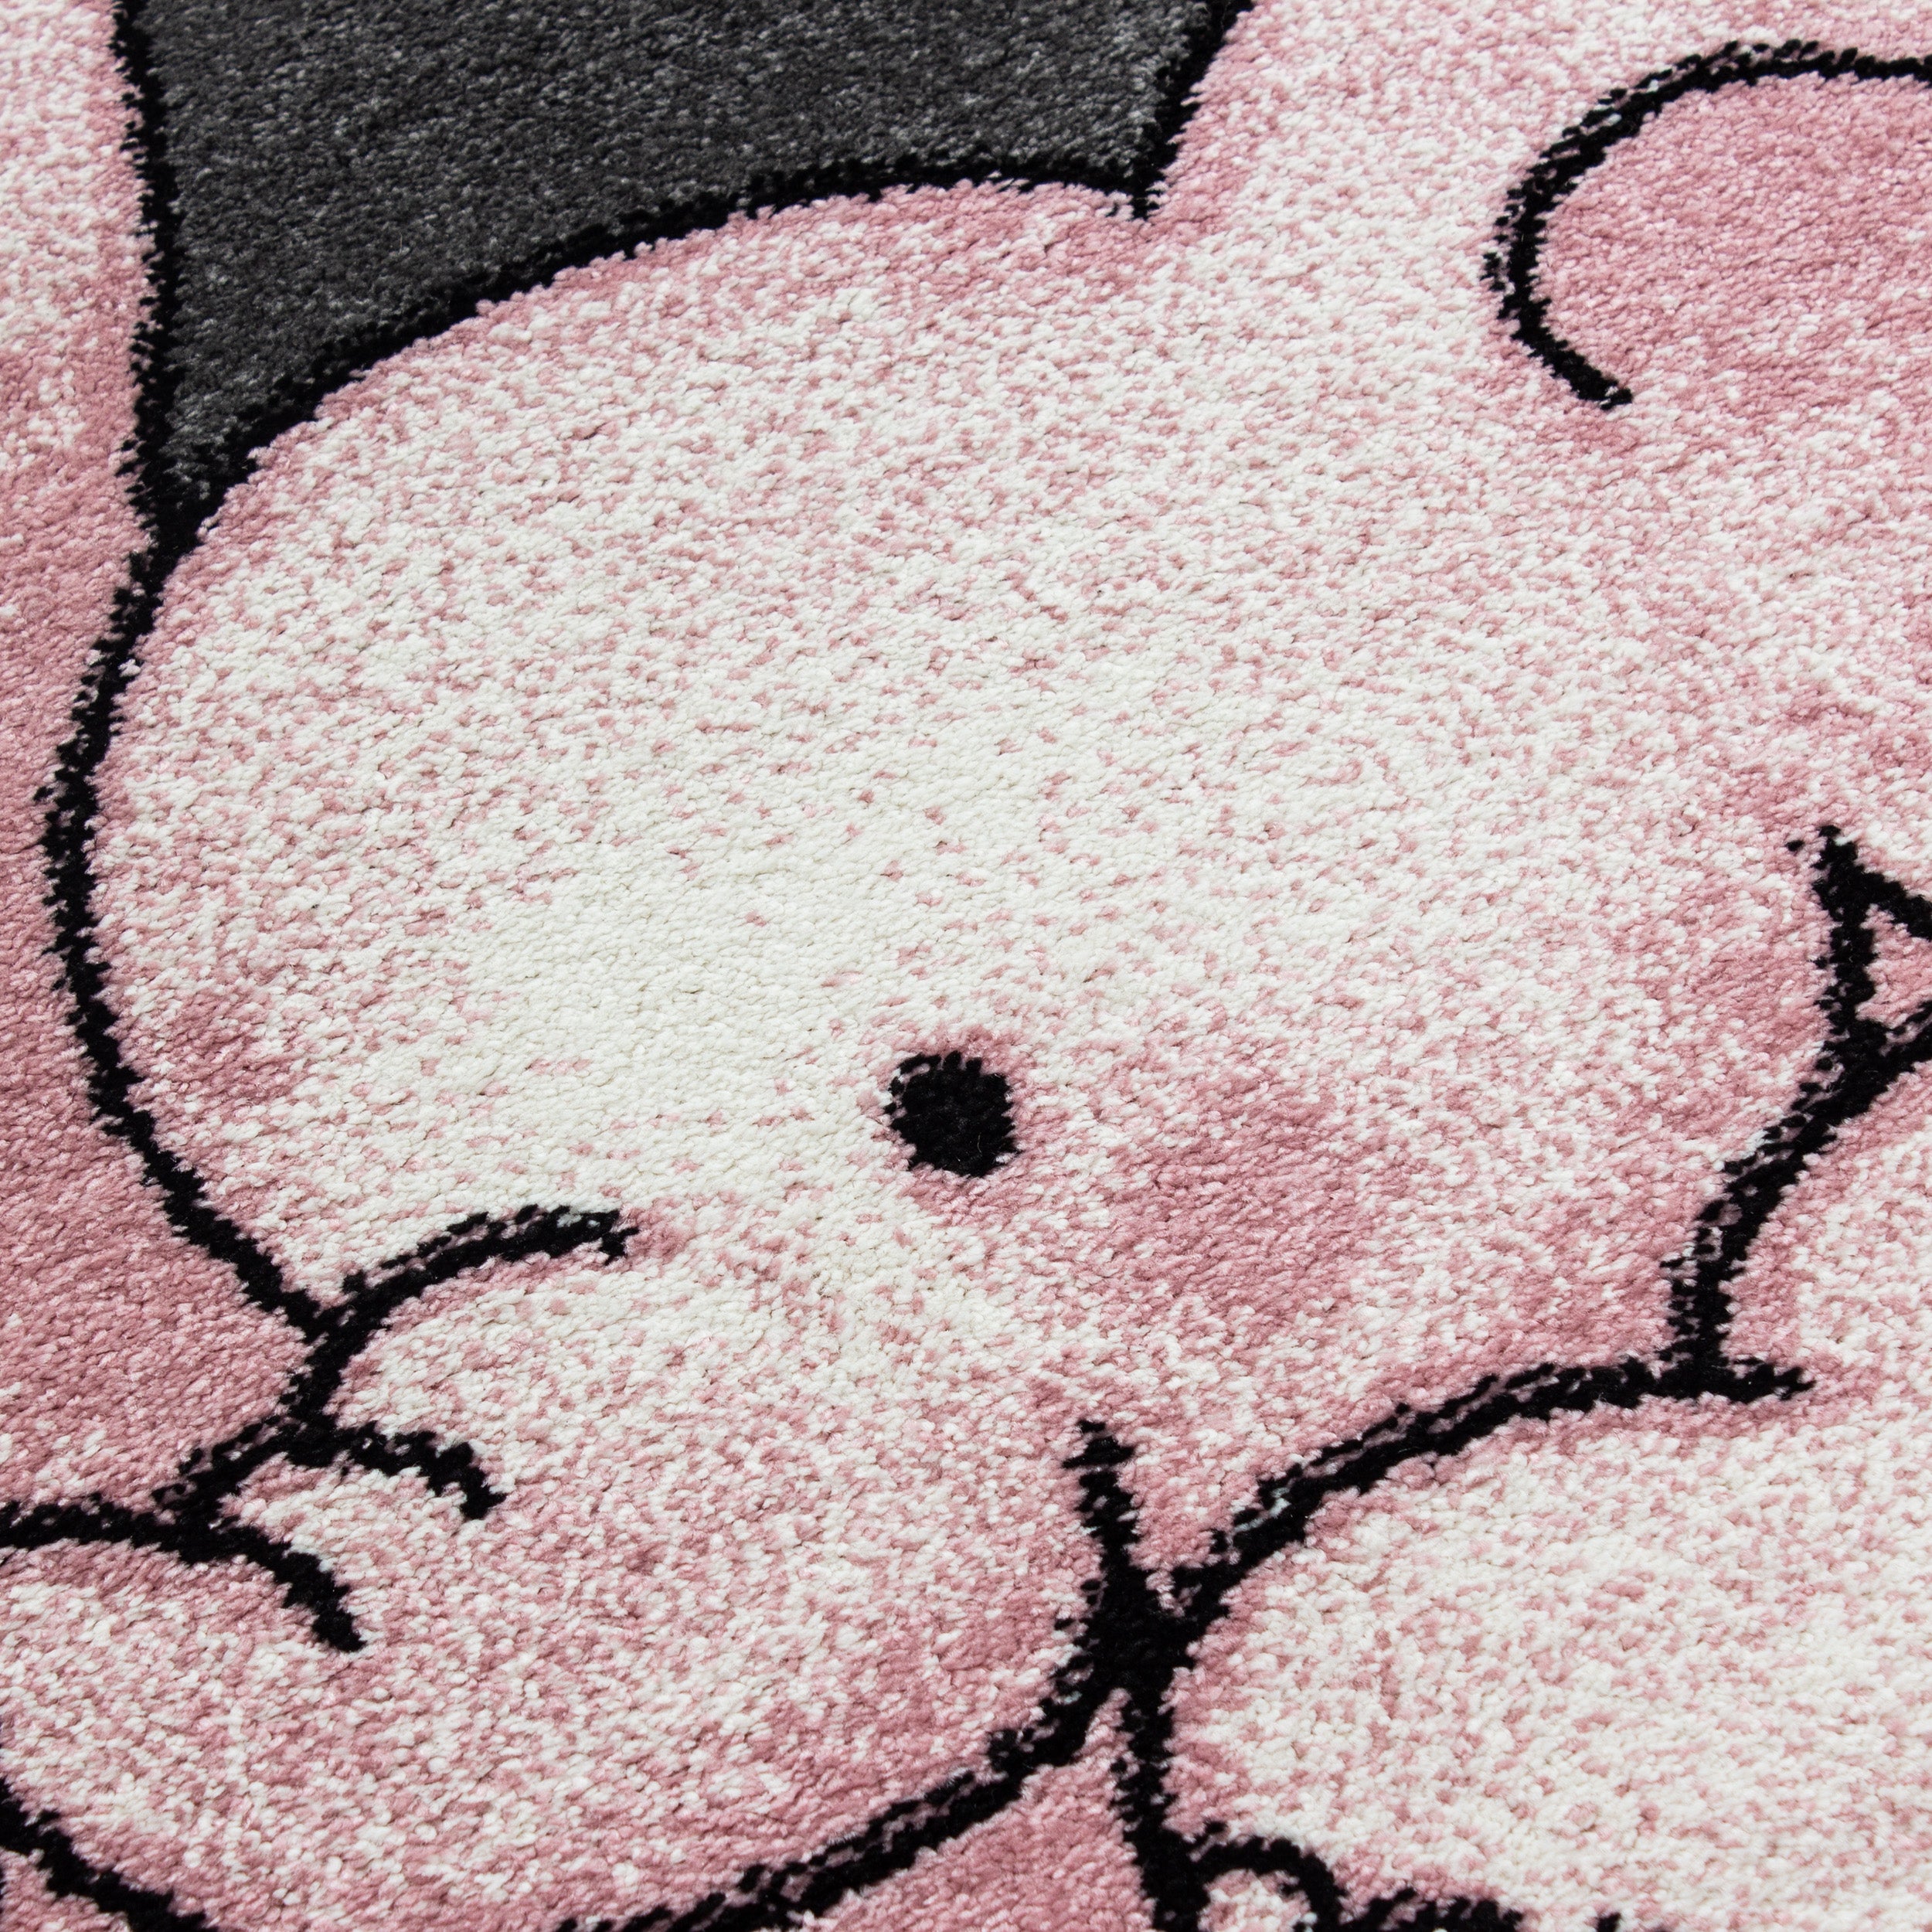 Kinderteppich Kurzflor Elefanten Mama Kinderzimmer Babyzimmer Grau Pink Meliert